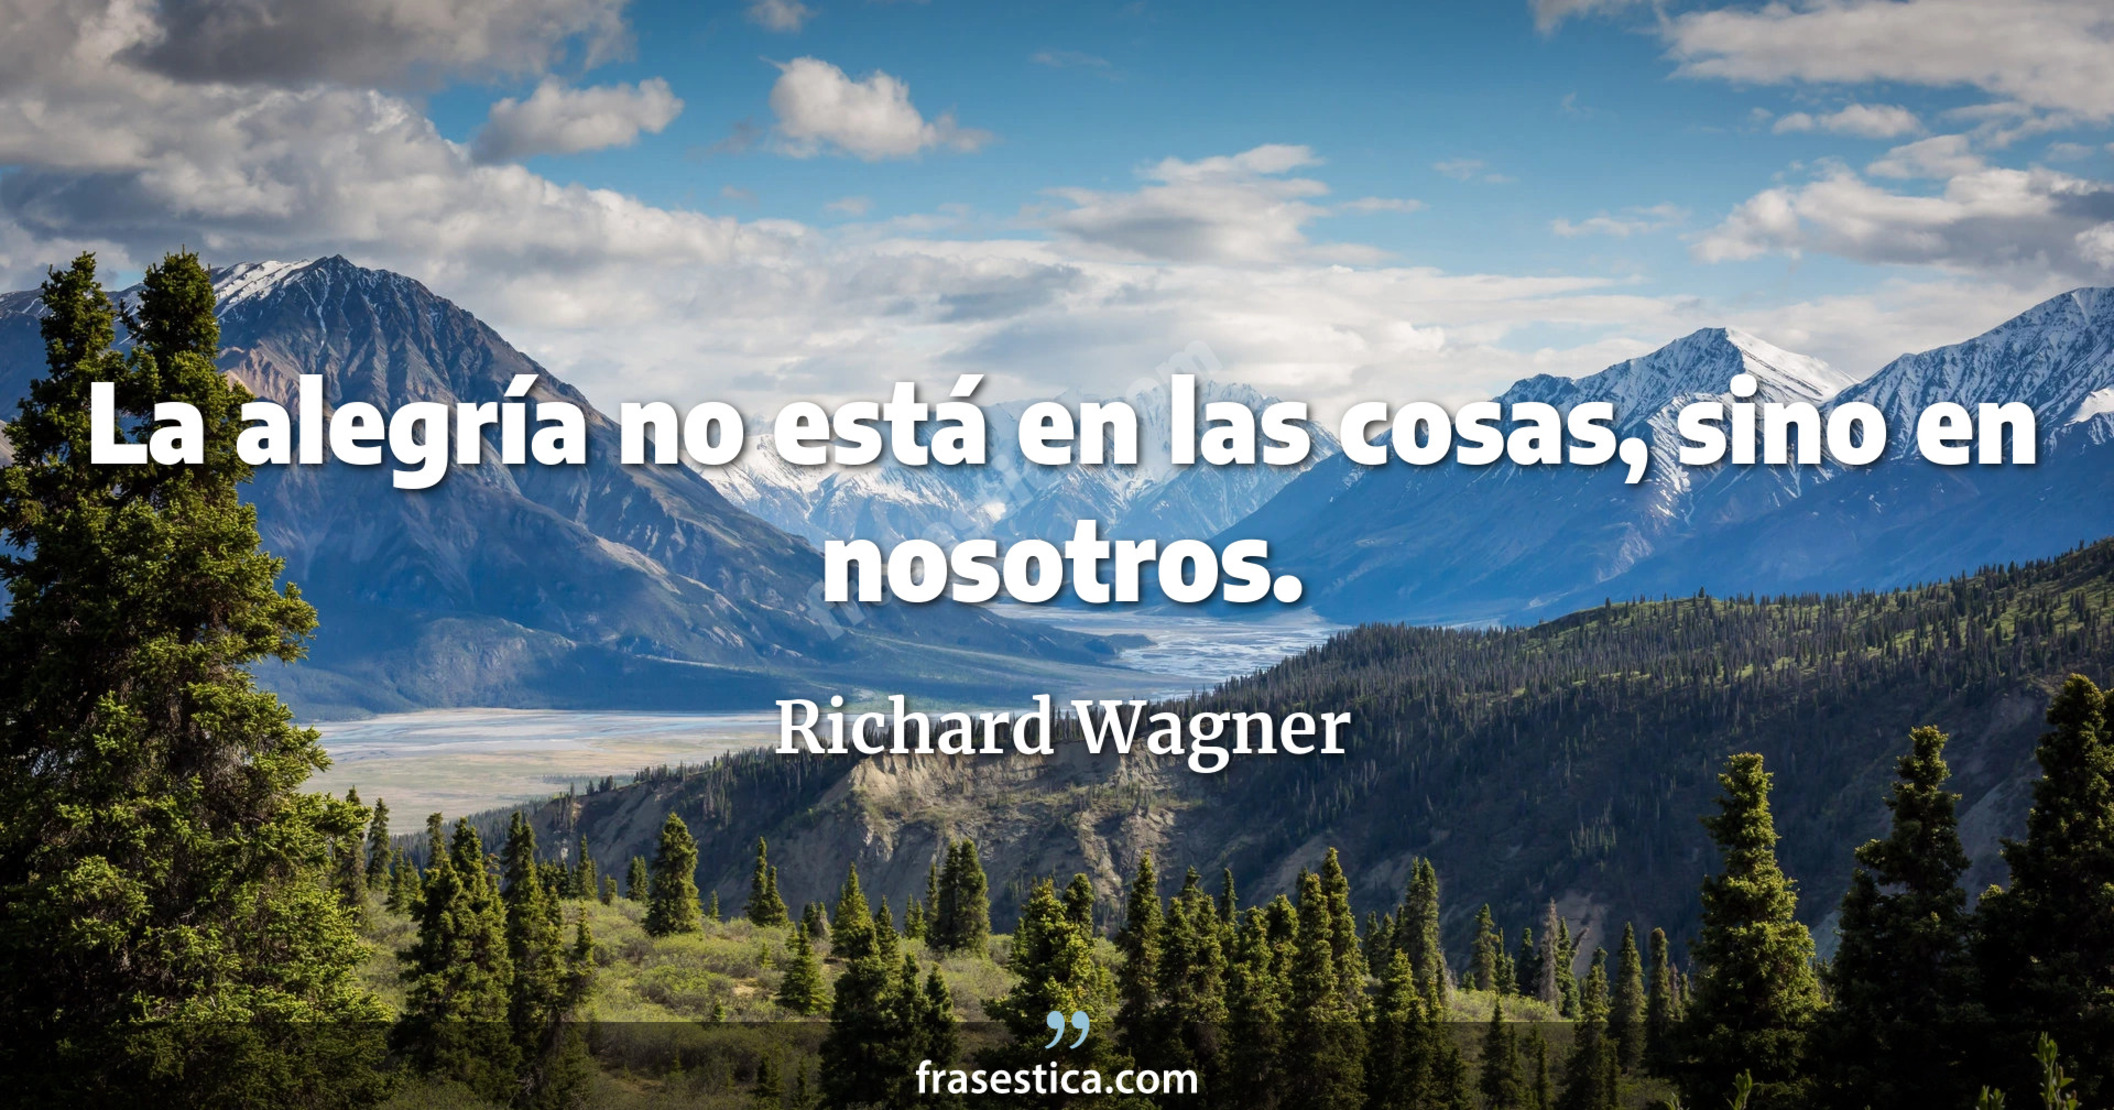 La alegría no está en las cosas, sino en nosotros. - Richard Wagner